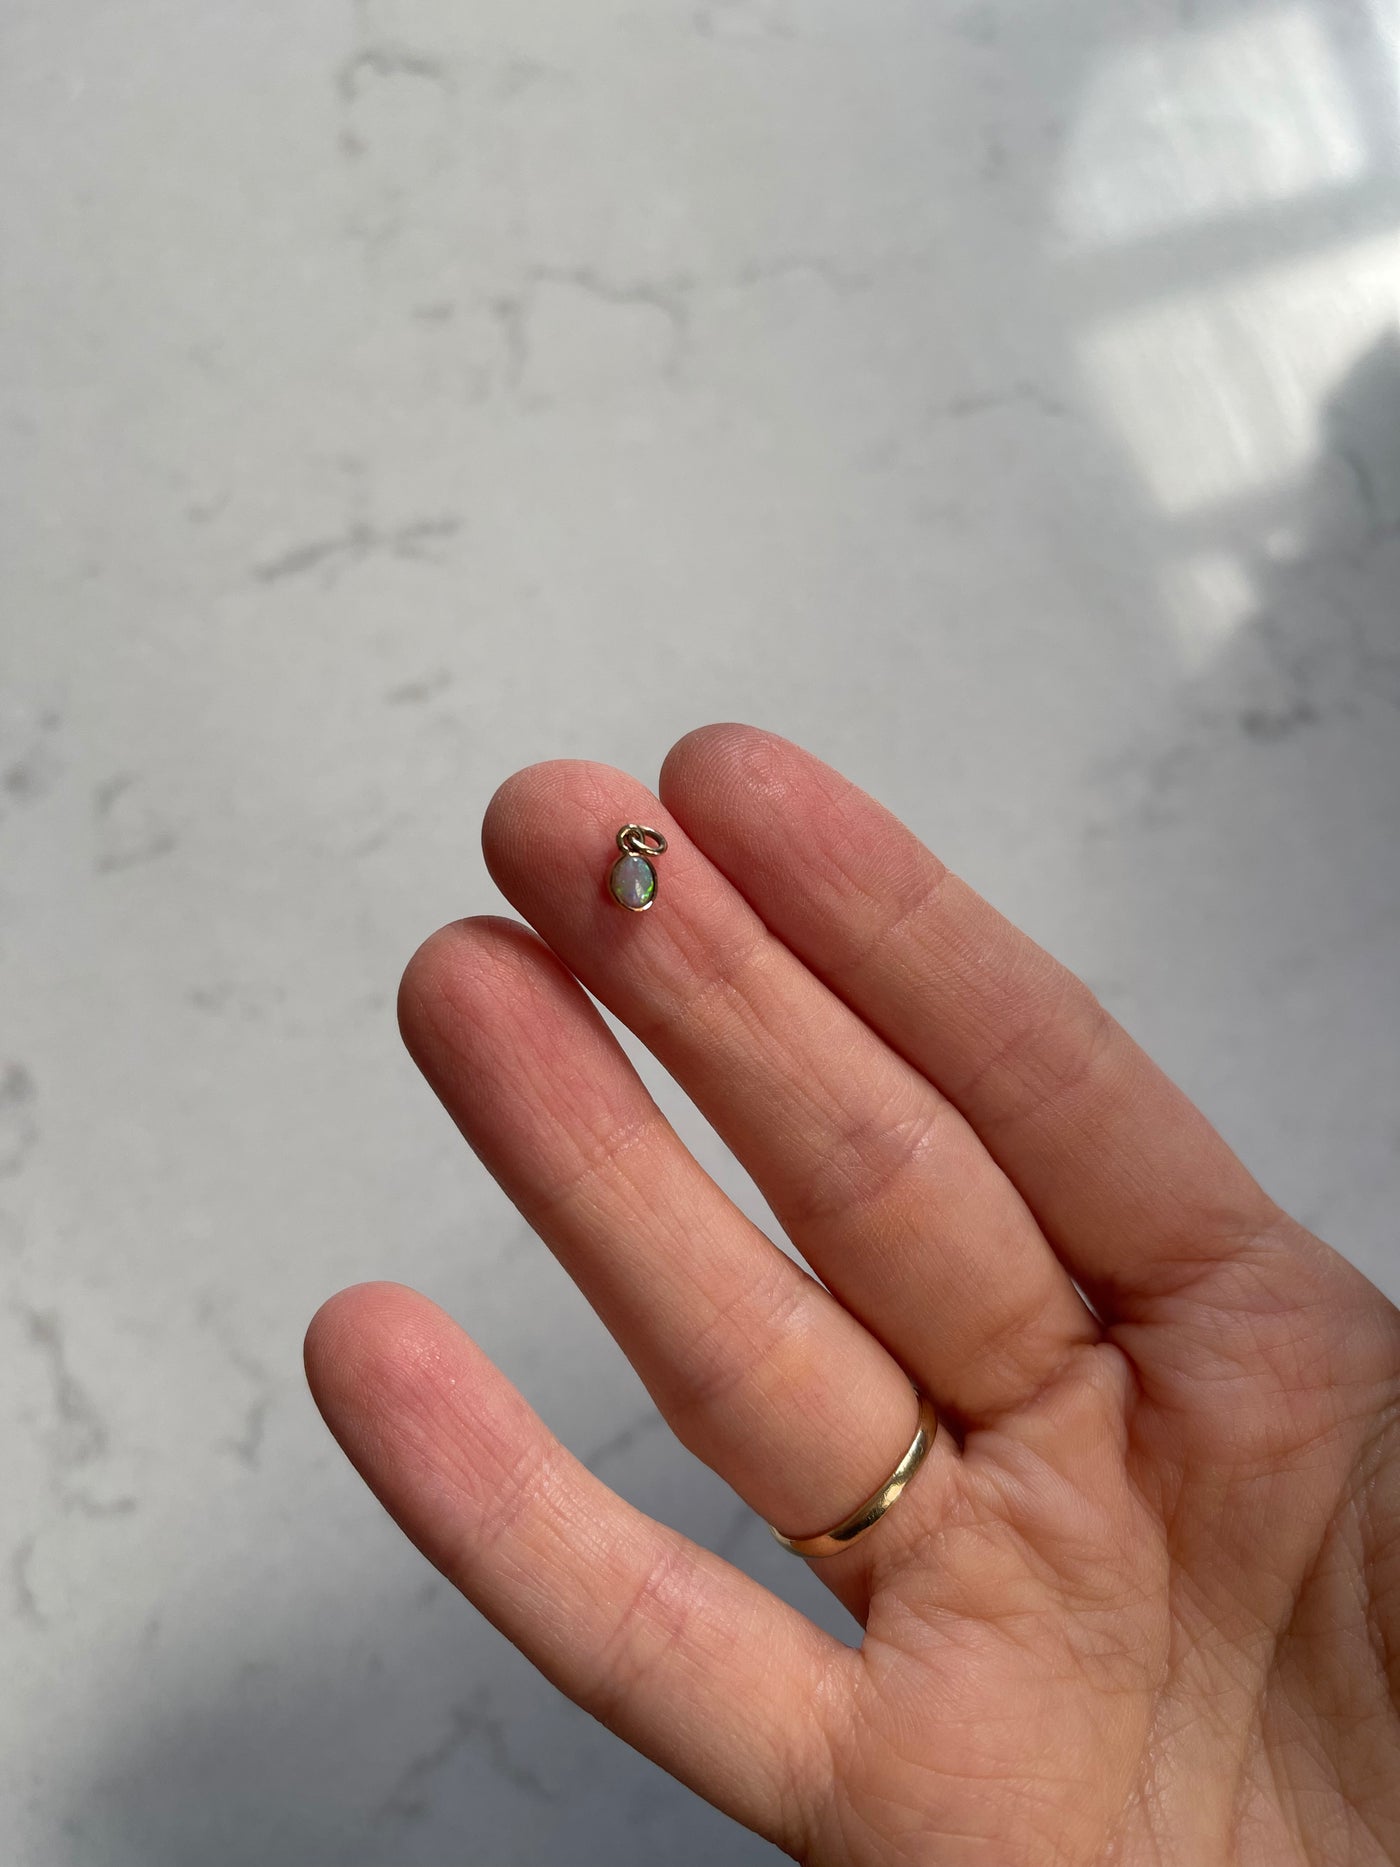 'Mia' 9ct Teeny Tiny Victorian Opal Charm